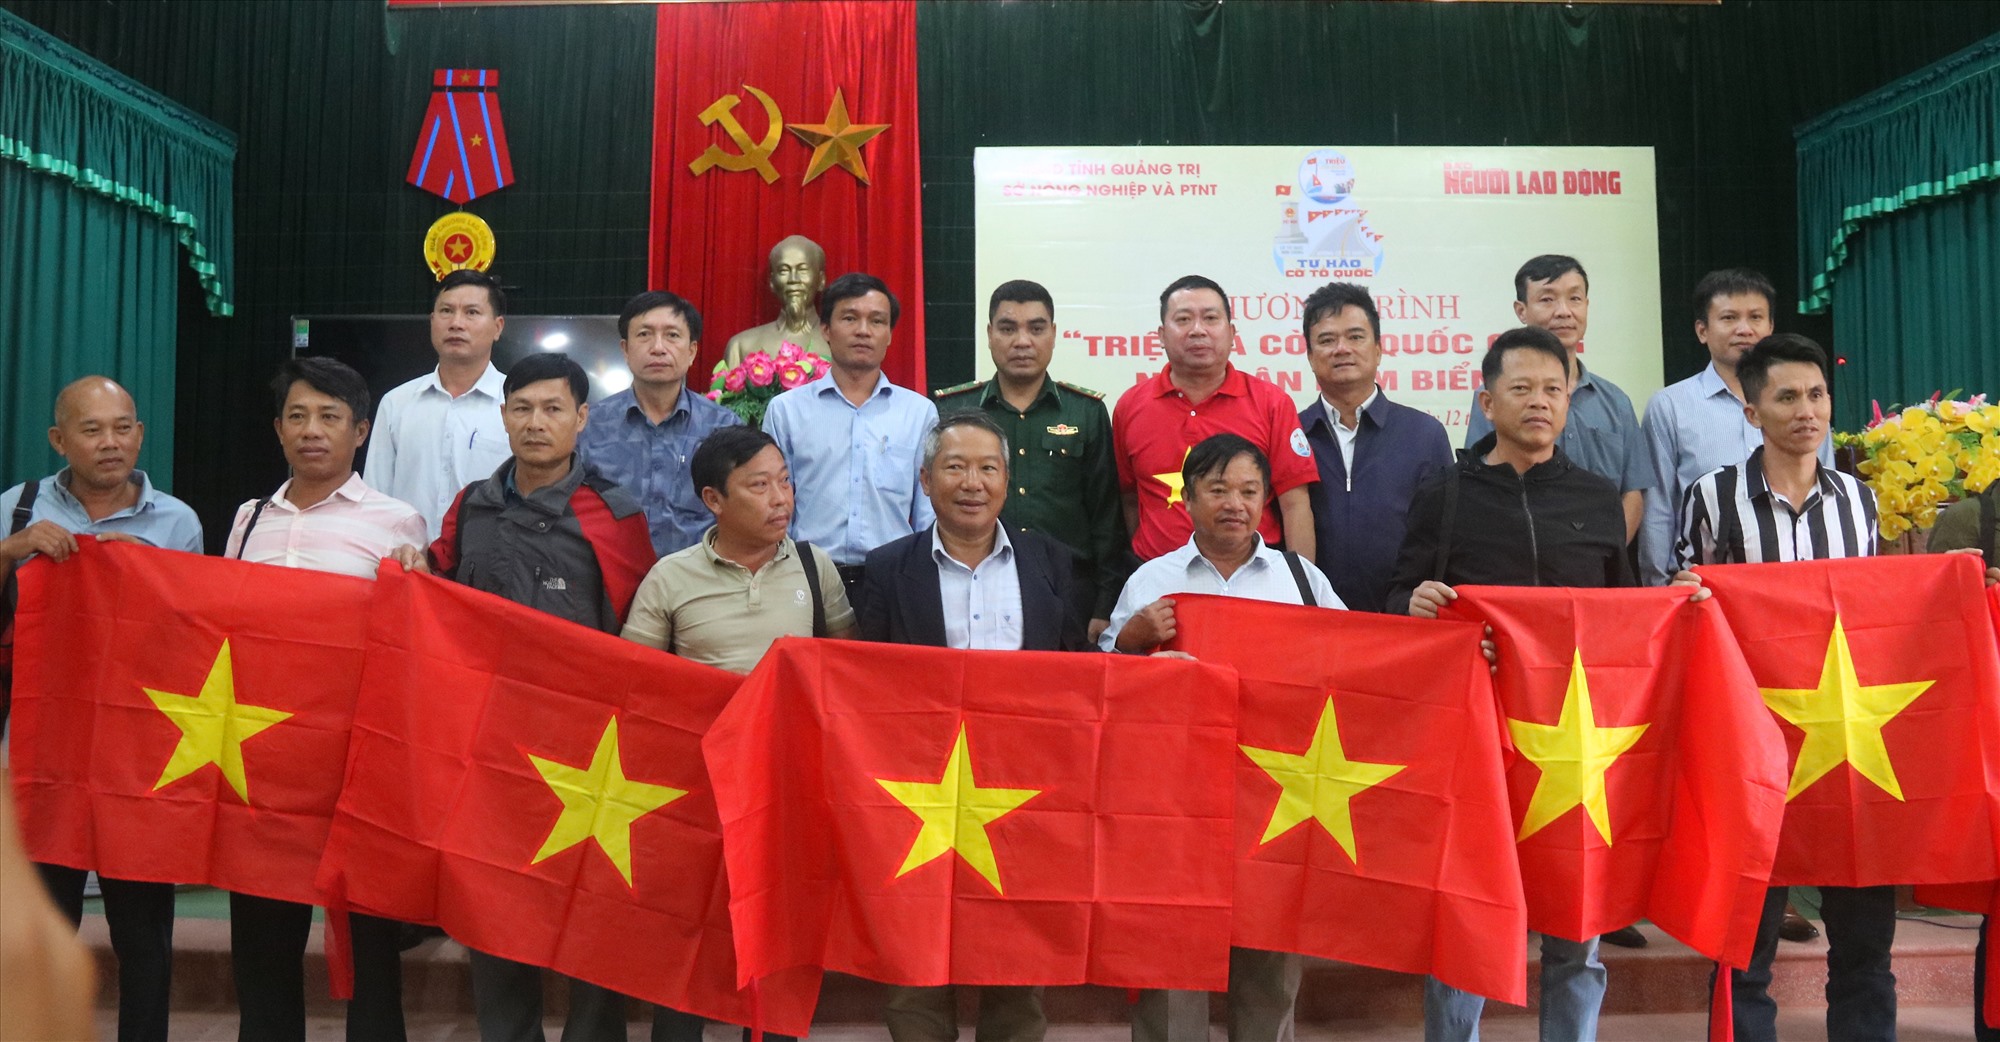 Tặng cờ Tổ quốc và túi cấp cứu chấn thương cho ngư dân thị trấn Cửa Việt - Ảnh: N.B